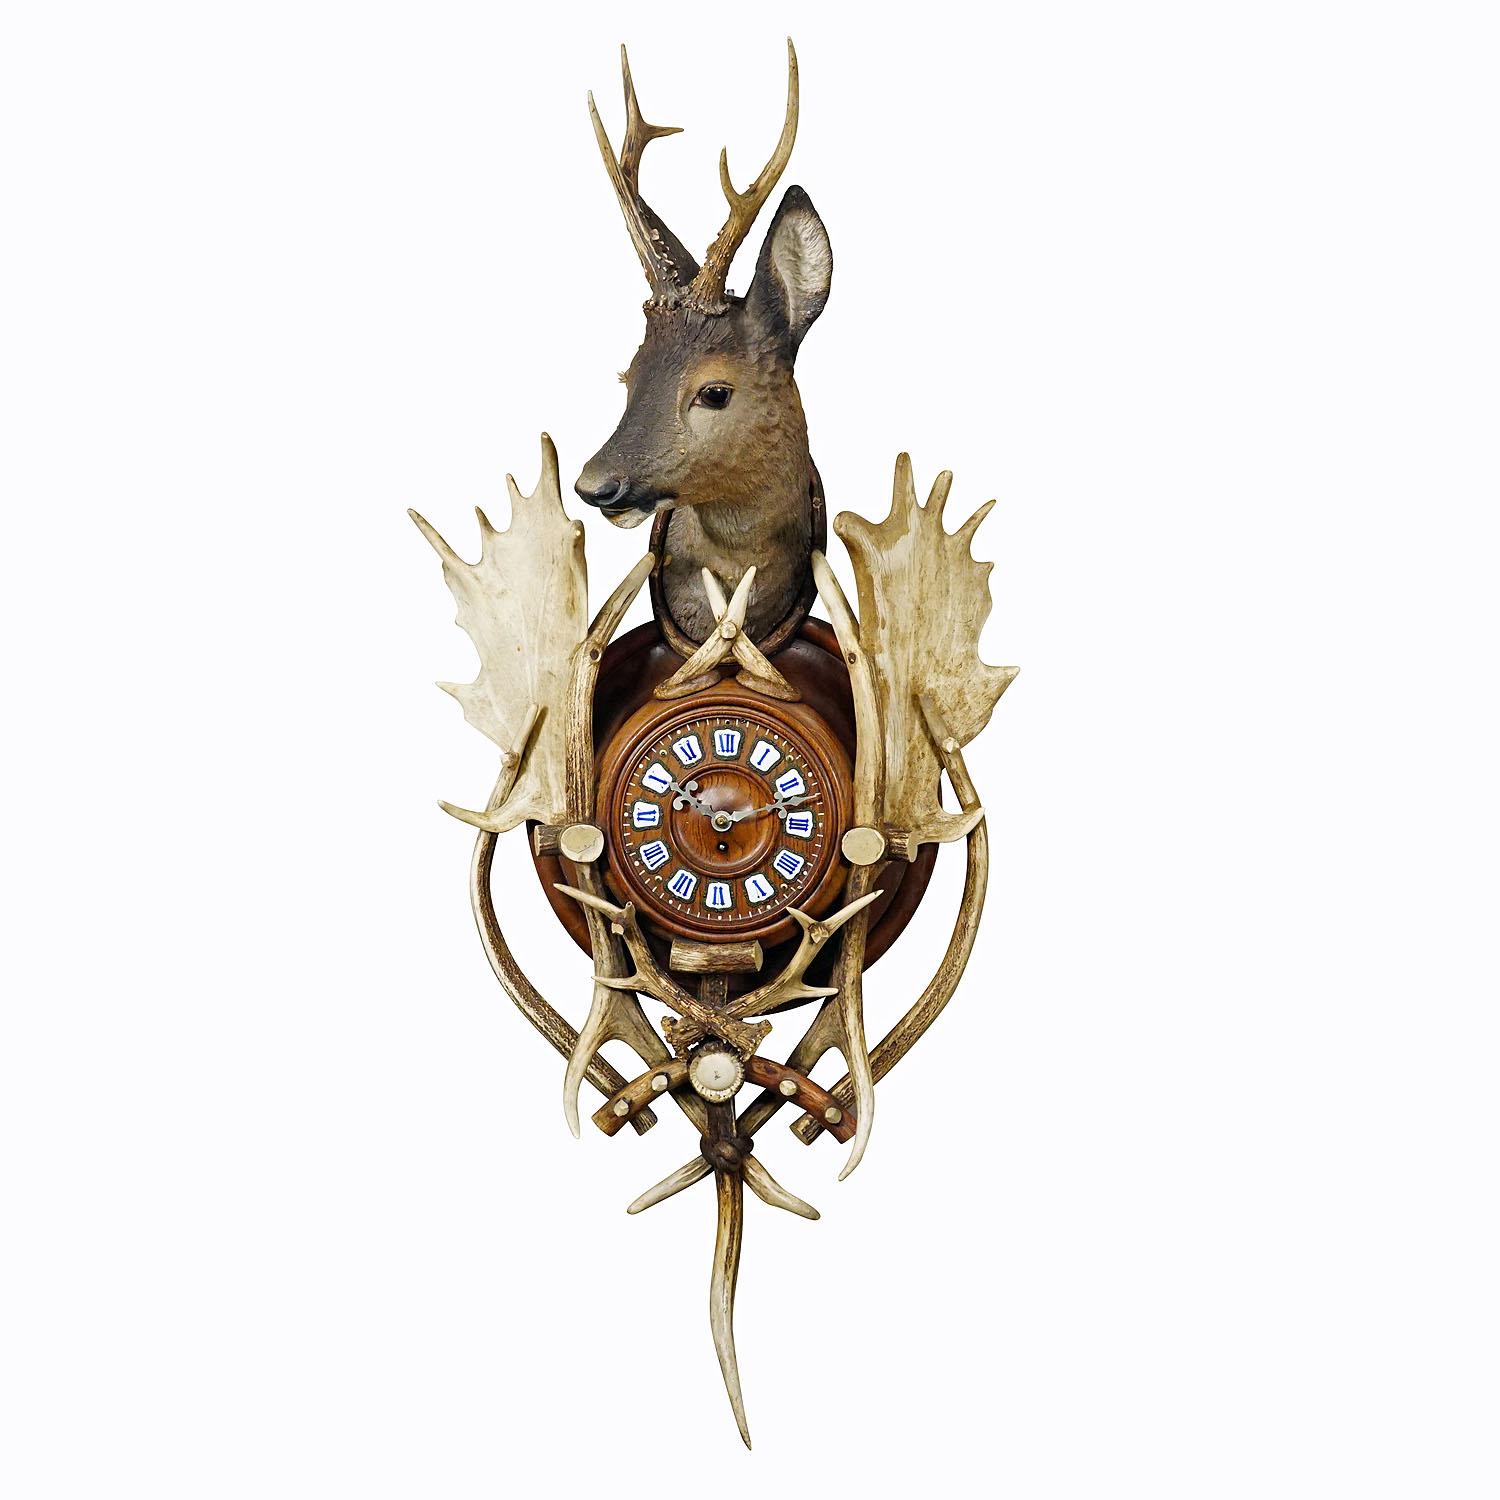 Horloge murale ancienne en bois de cerf avec tête de cerf Autriche vers 1900

Une grande horloge murale rustique en bois de cerf. Le coffret en bois est richement décoré d'applications en plâtre, d'une tête de cerf en plâtre, de bois de cerf et de